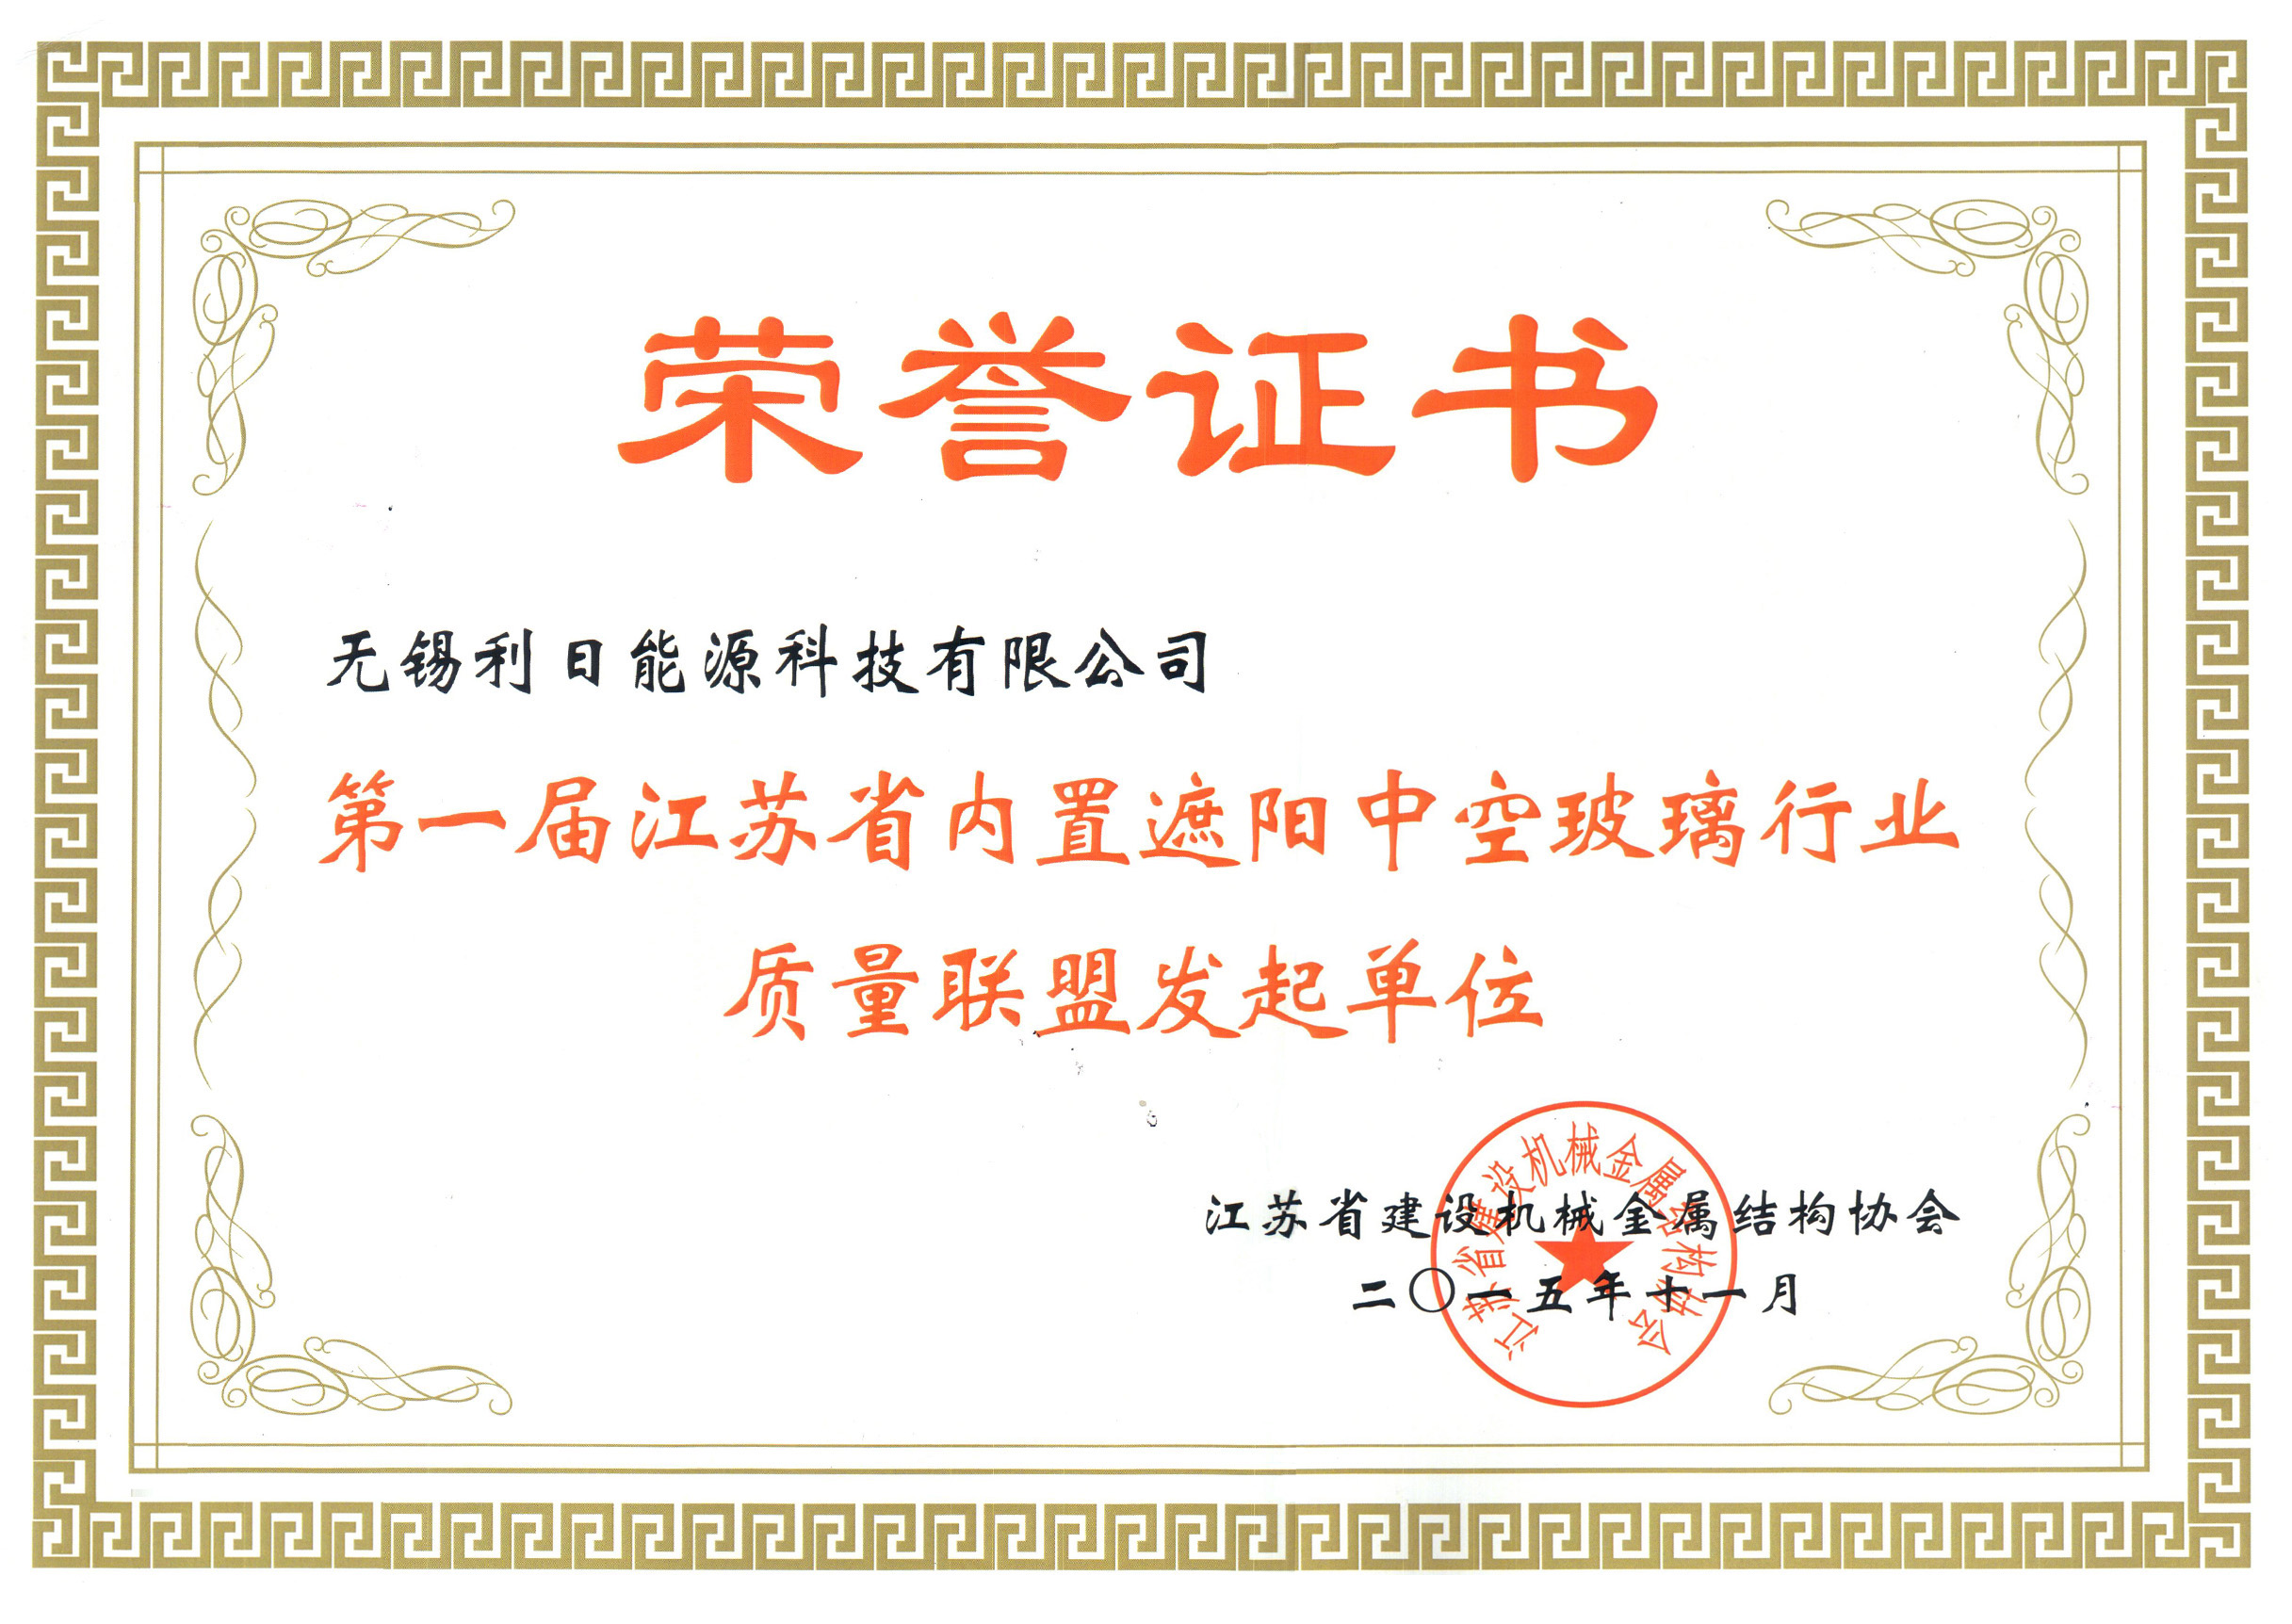 第一届江苏省内置遮阳中空玻璃行业质量联盟发起单位